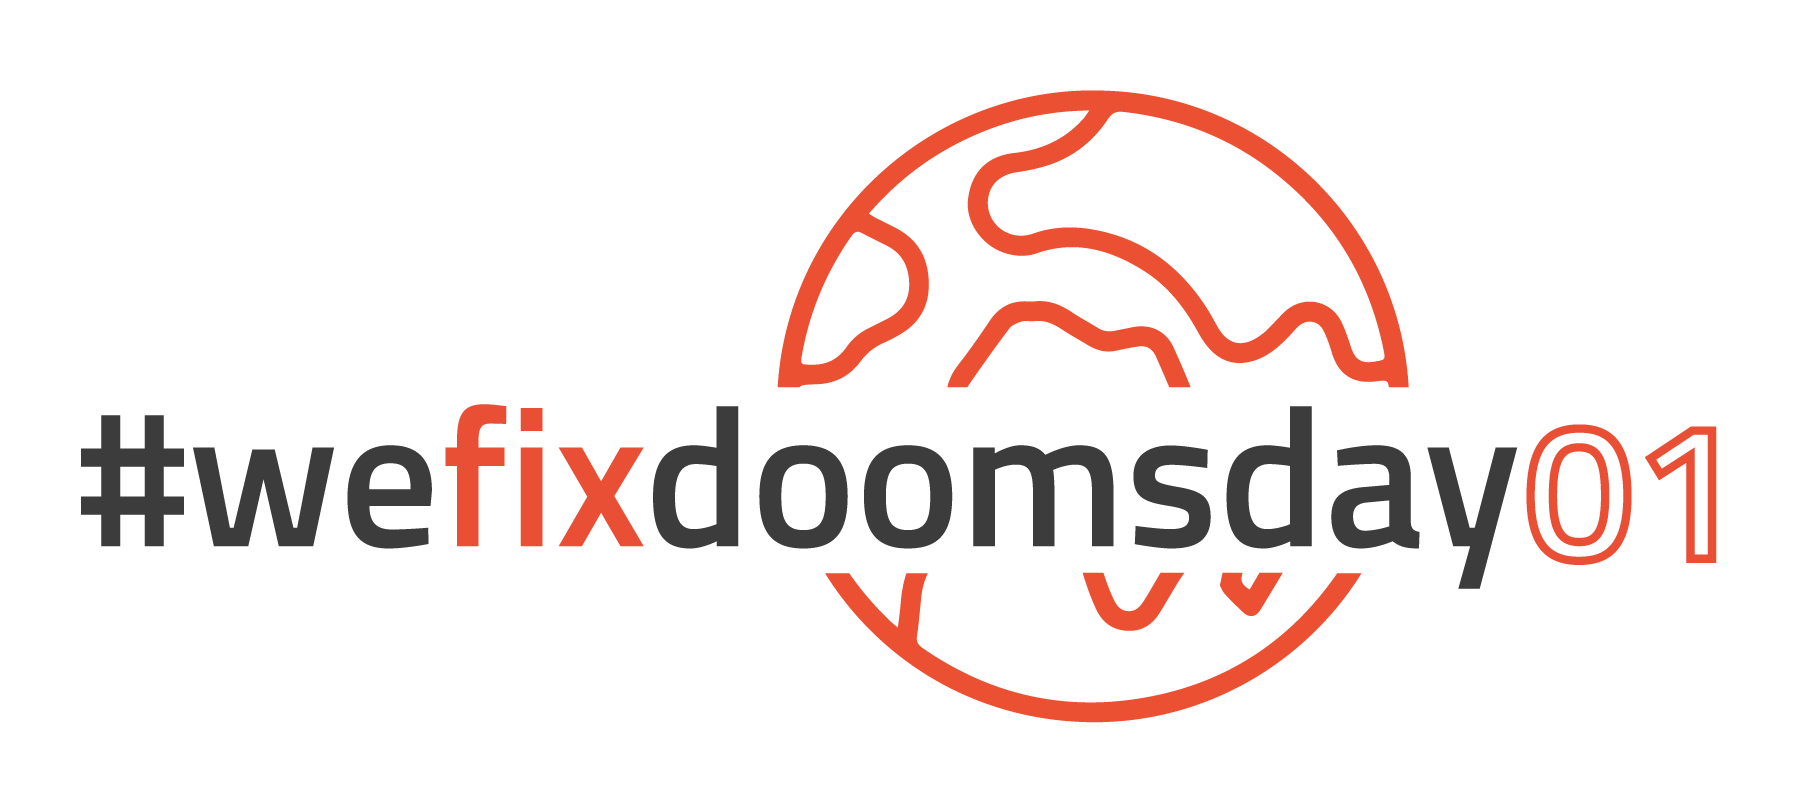 wefixdoomsday01-Logo_small